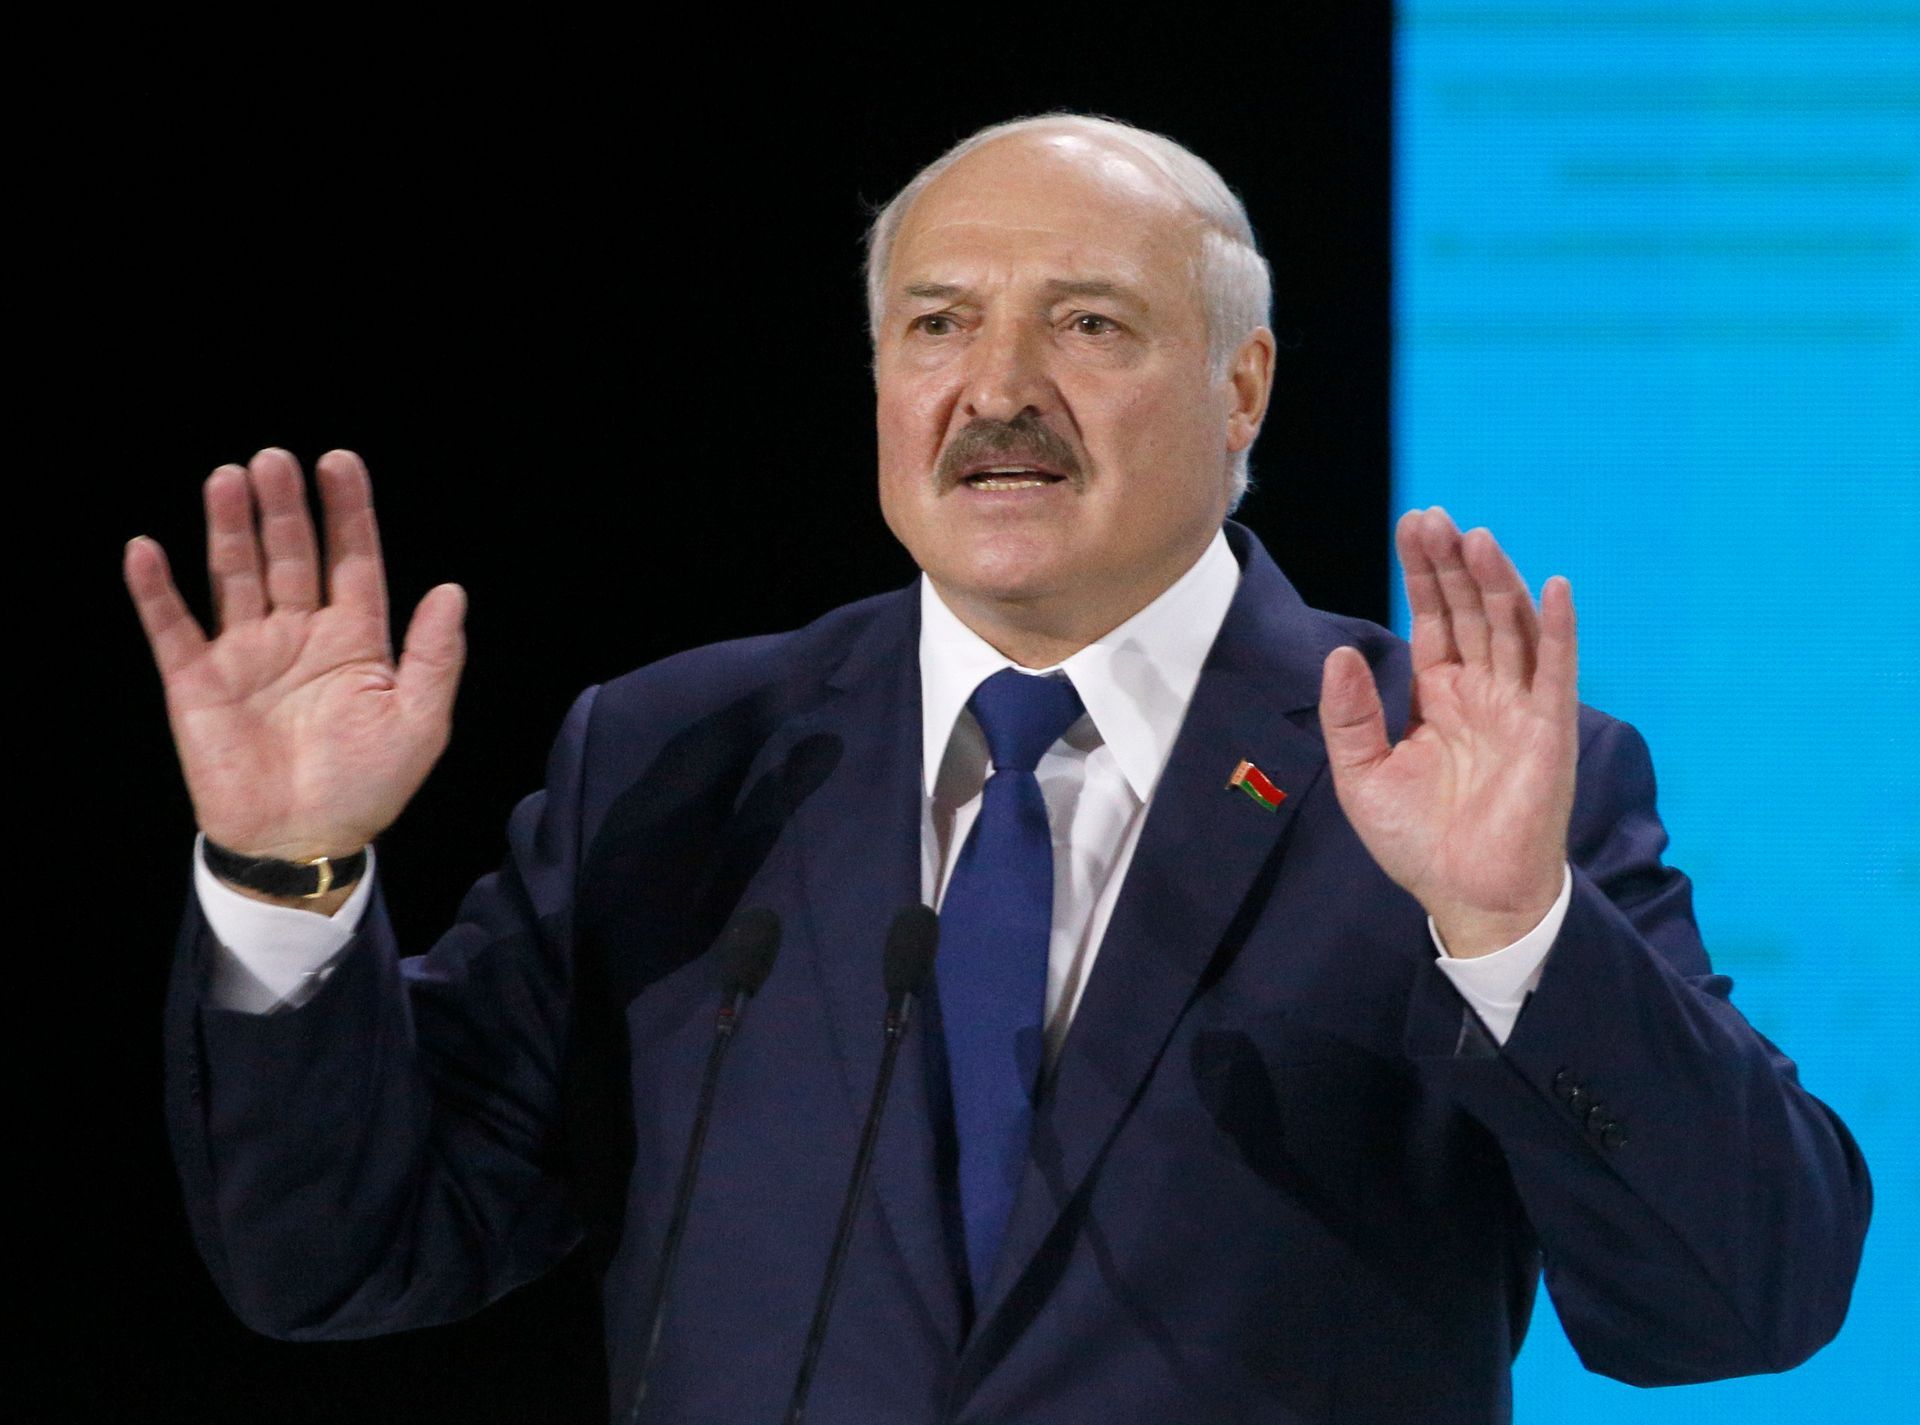 Труппы на границе и очередной "переворот" в Беларуси: главные заявления Лукашенко после мятежа Пригожина - 24 Канал